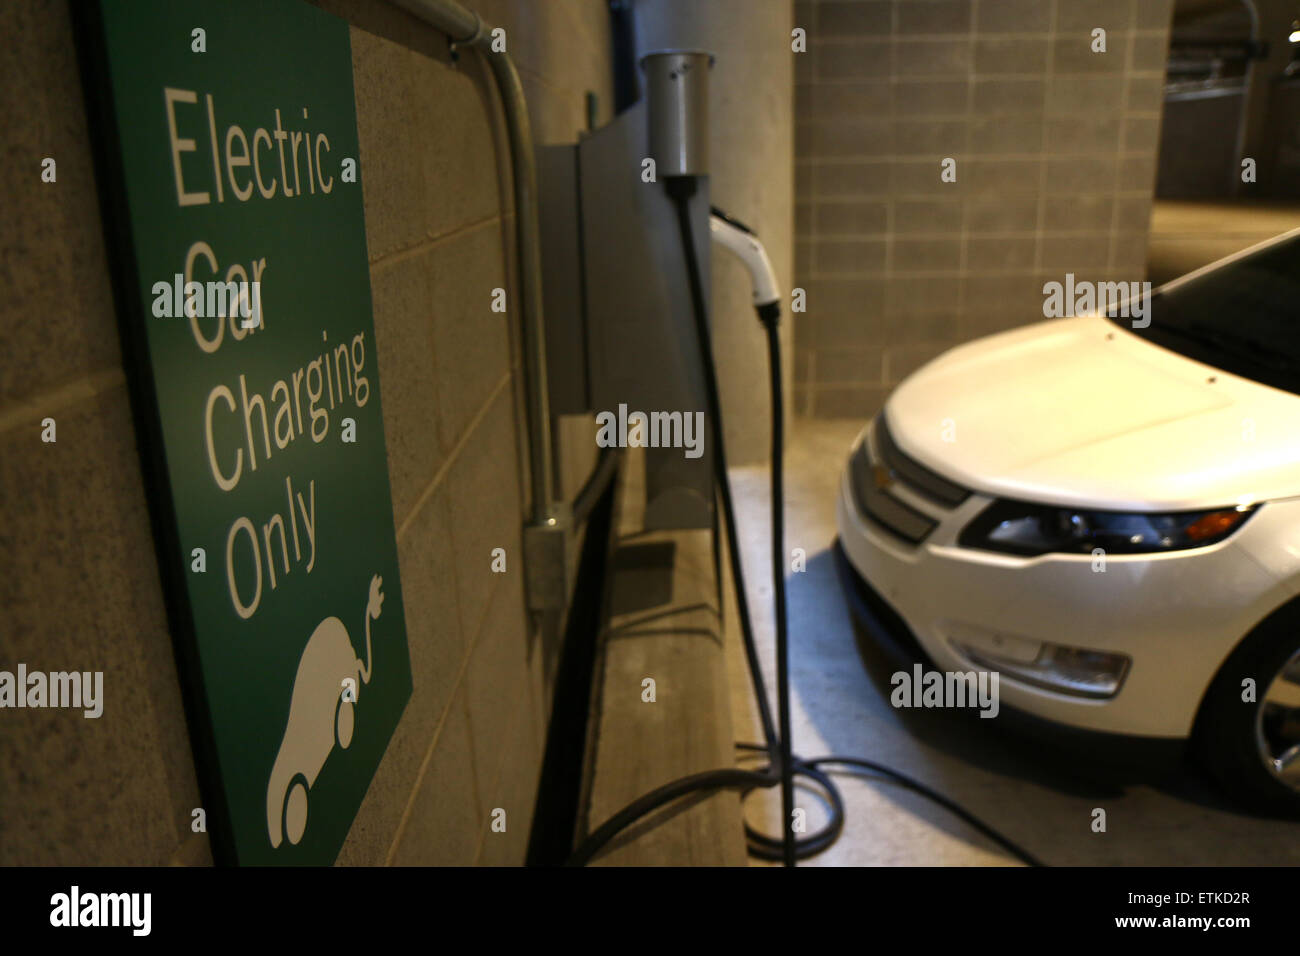 Espacio para aparcar el coche eléctrico de la estación de carga de Cincinnati, Ohio Foto de stock